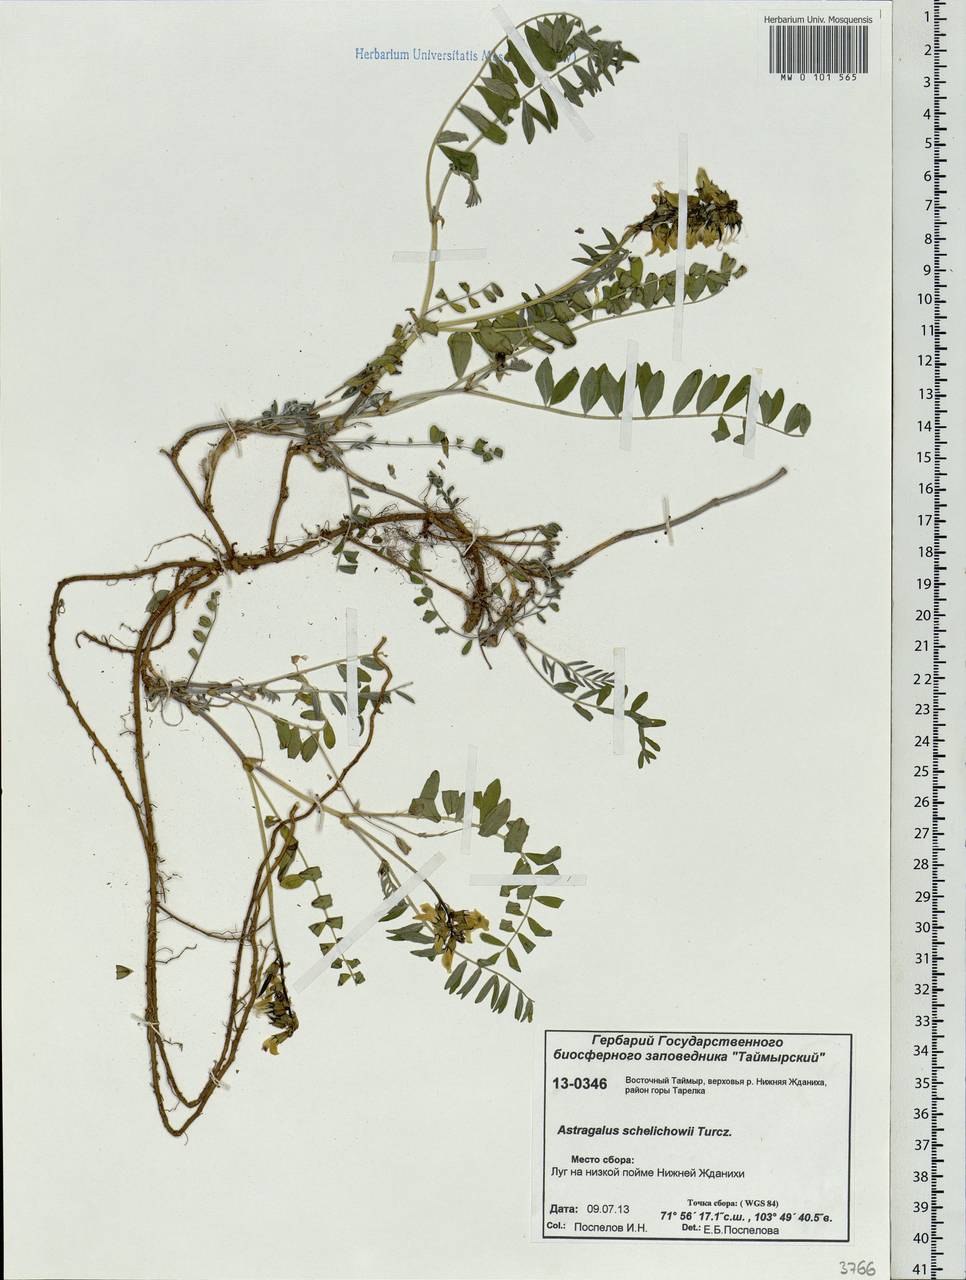 Astragalus schelichowii Turcz., Siberia, Central Siberia (S3) (Russia)